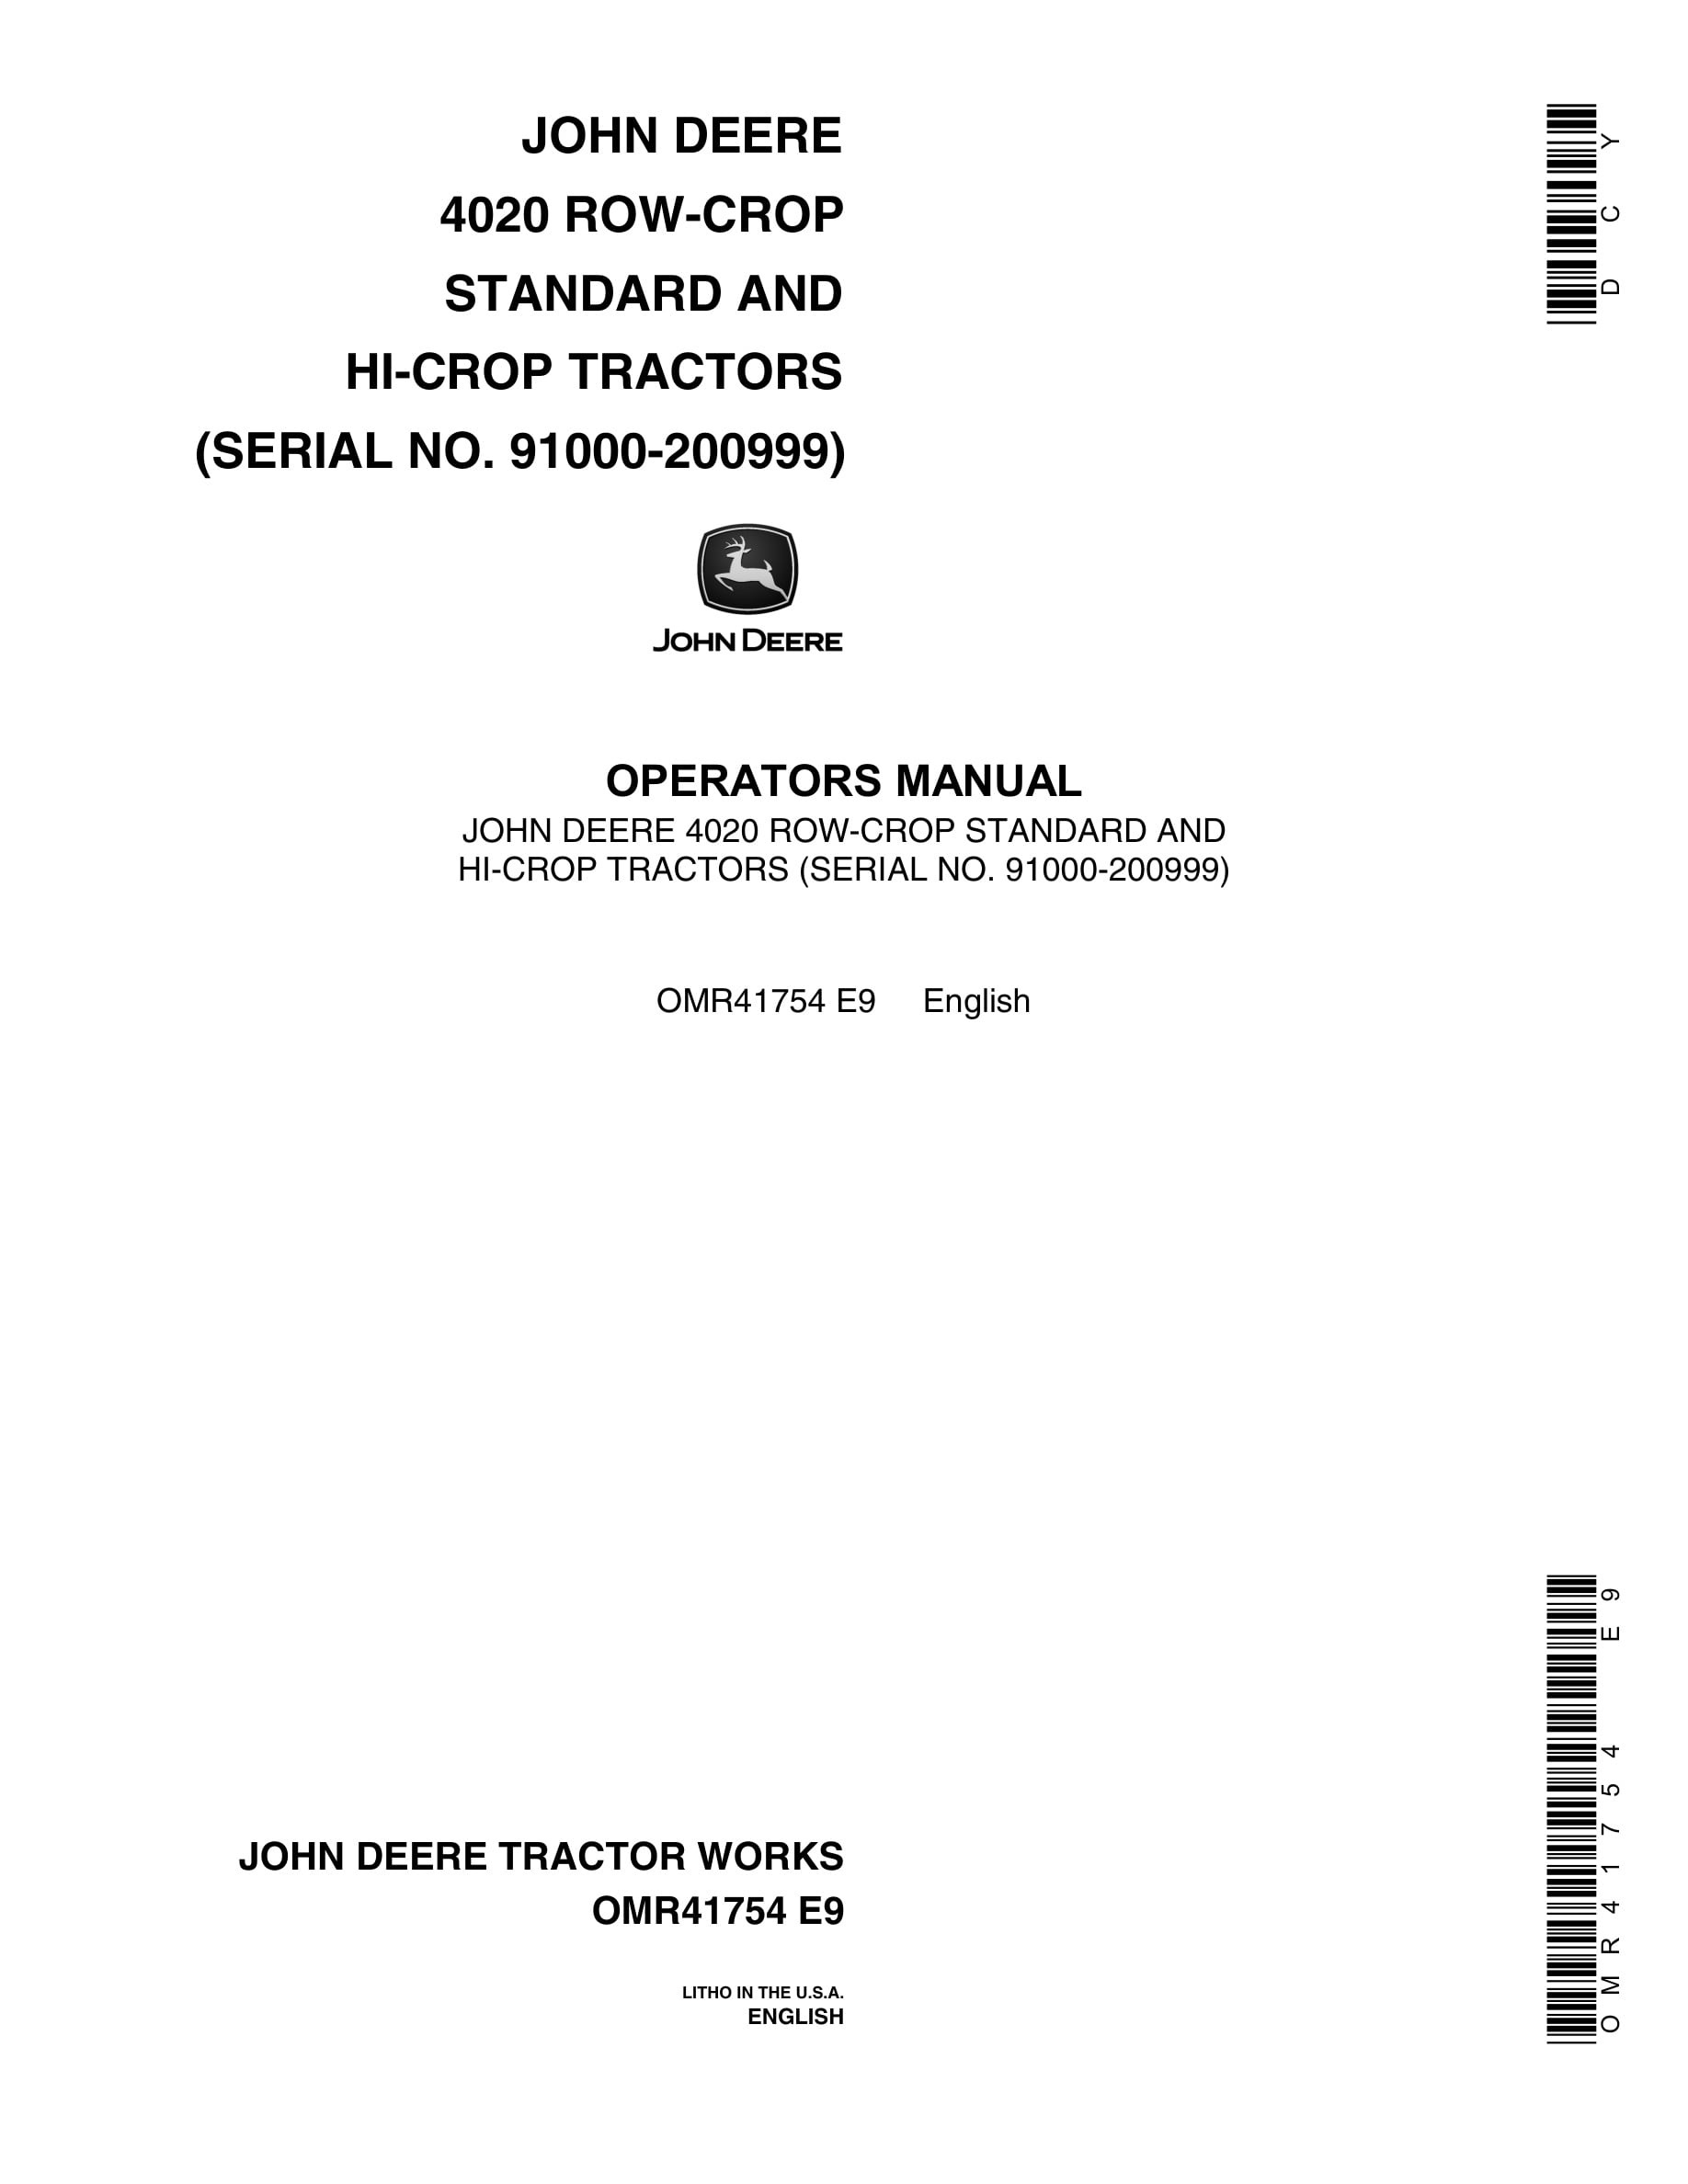 John Deere 4020 Tractor Operator Manual OMR41754-1